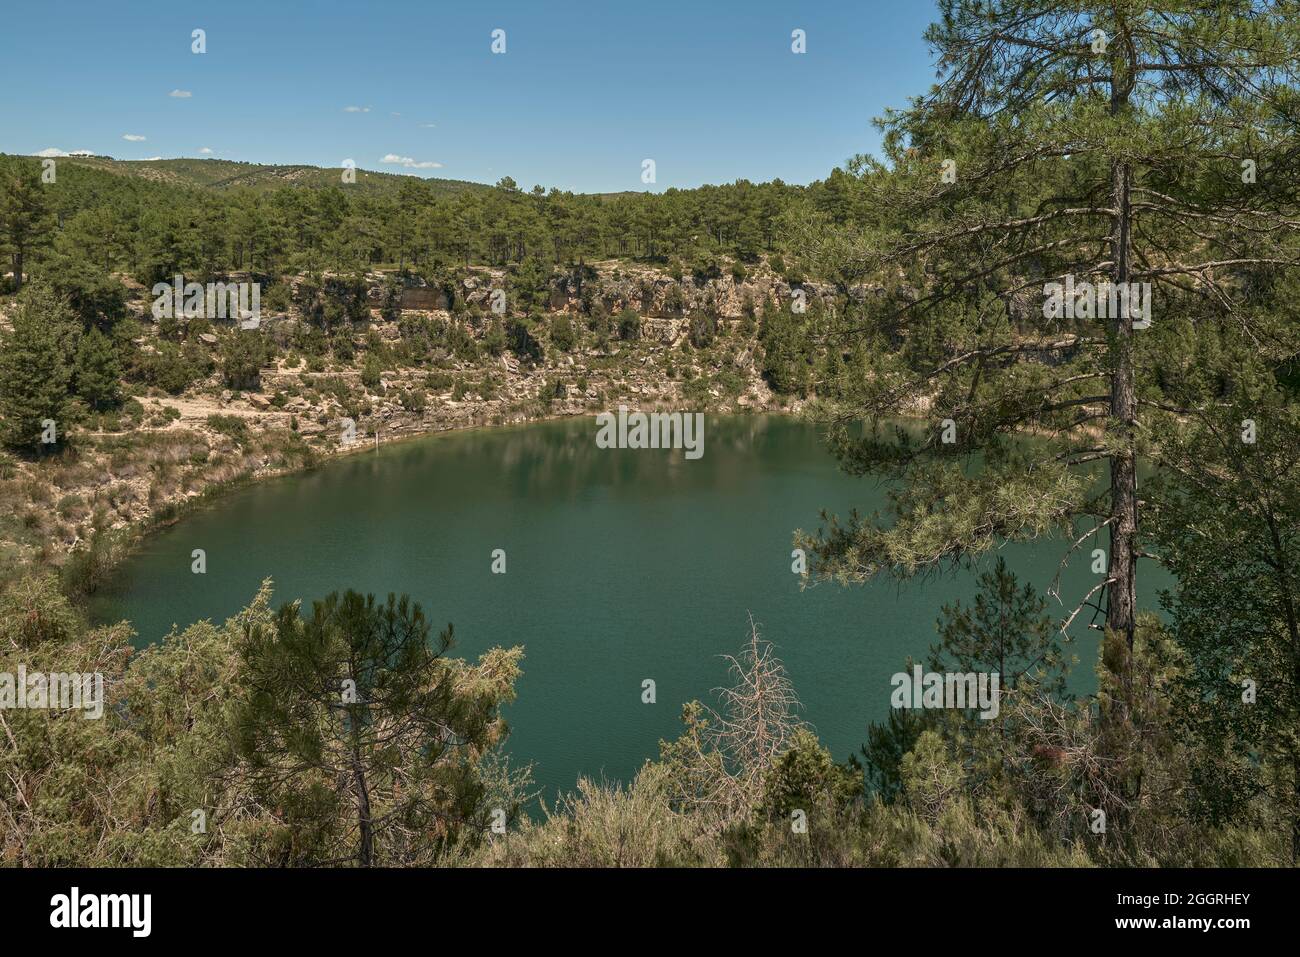 Lagunas de Cañada del Hoyo Monument naturel, cavités naturelles ou torcas d'origine karstique dans la province de Cuenca, Castilla la Mancha, Espagne, Europe Banque D'Images